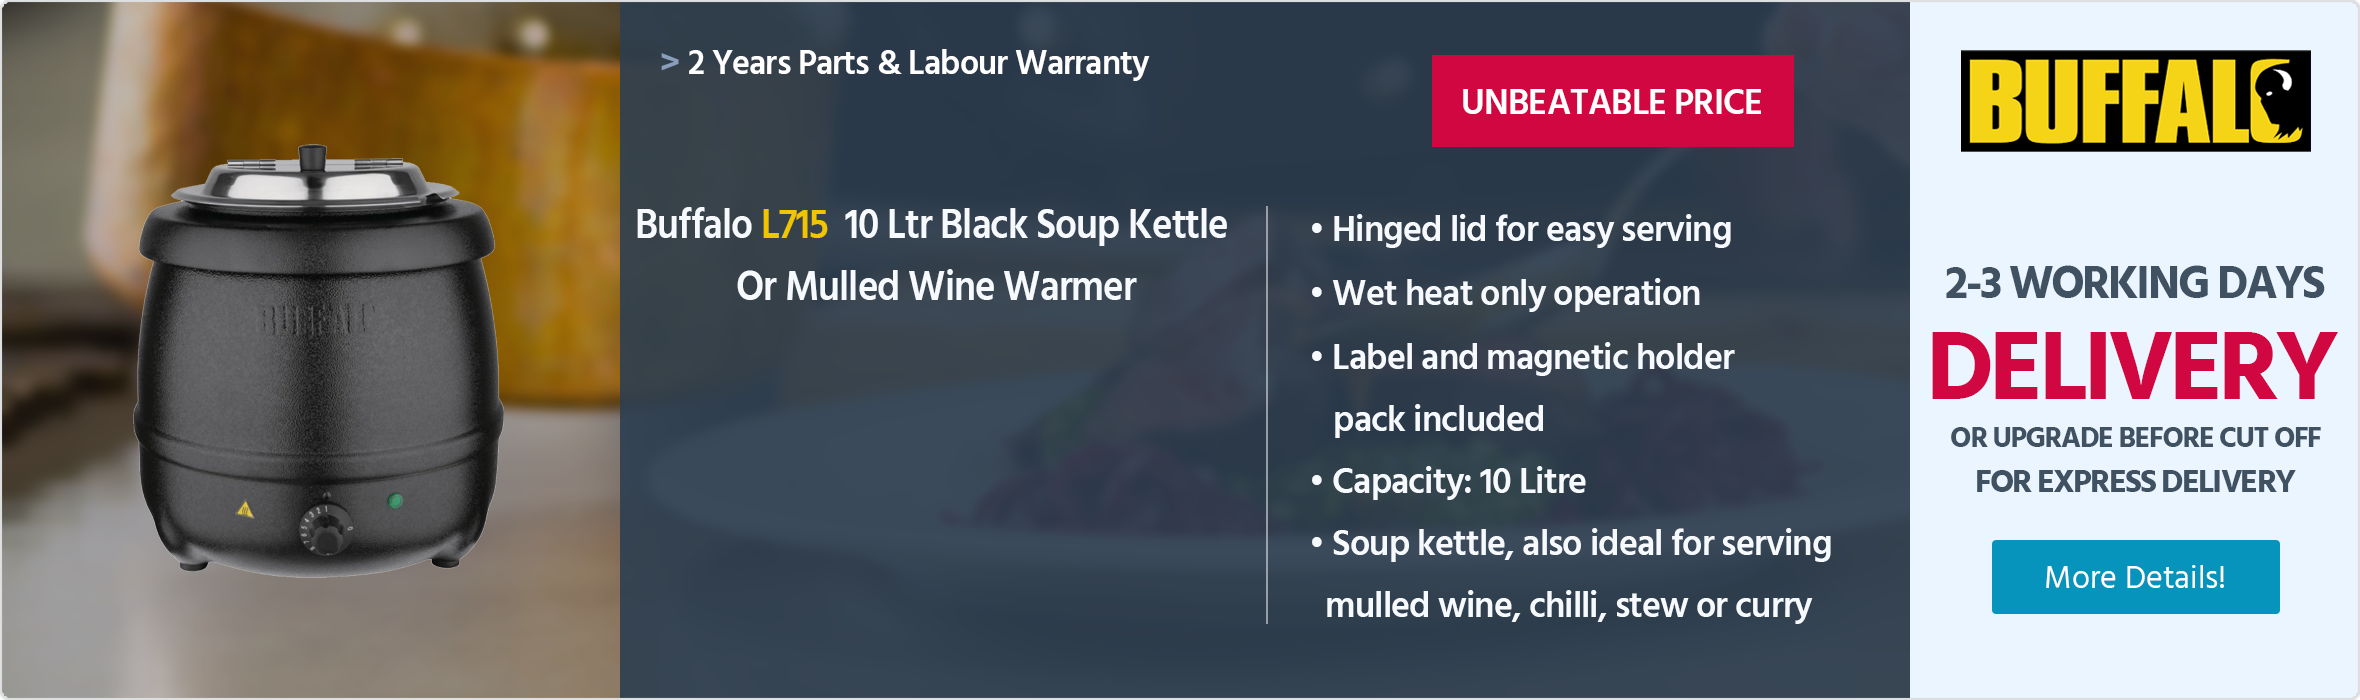 Buffalo L715 10 Ltr Black Soup Kettle / Mulled Wine Warmer